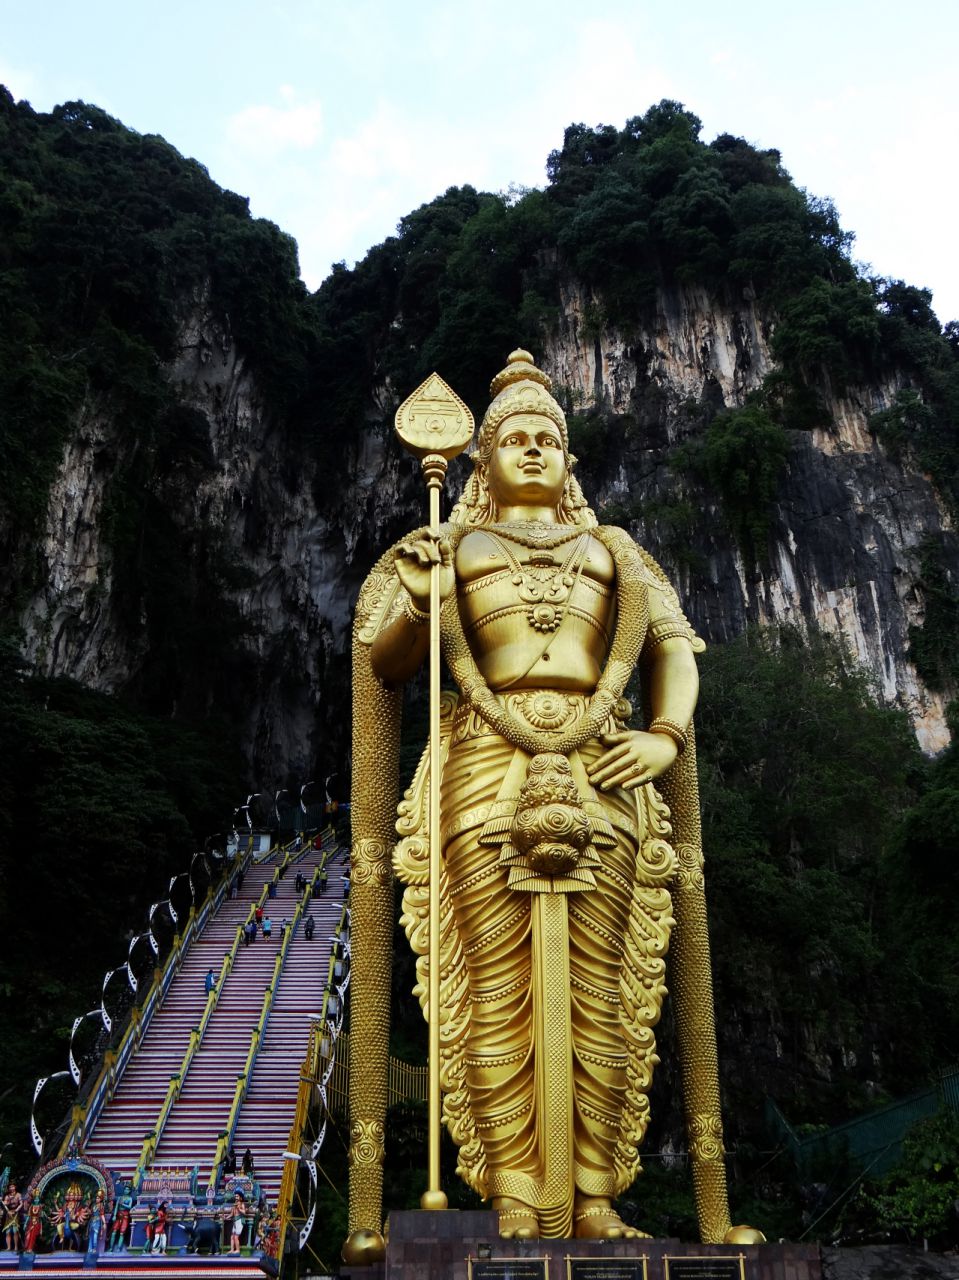 У подножия пещеры возвышается огромная позолоченная статуя бога Муругана, сына Шивы, которому поклоняются многие индуисты. Это его самое высокое изображение в мире – почти 43 метра. - Малайзия, Индонезия. Часть 1. Куала-Лумпур.